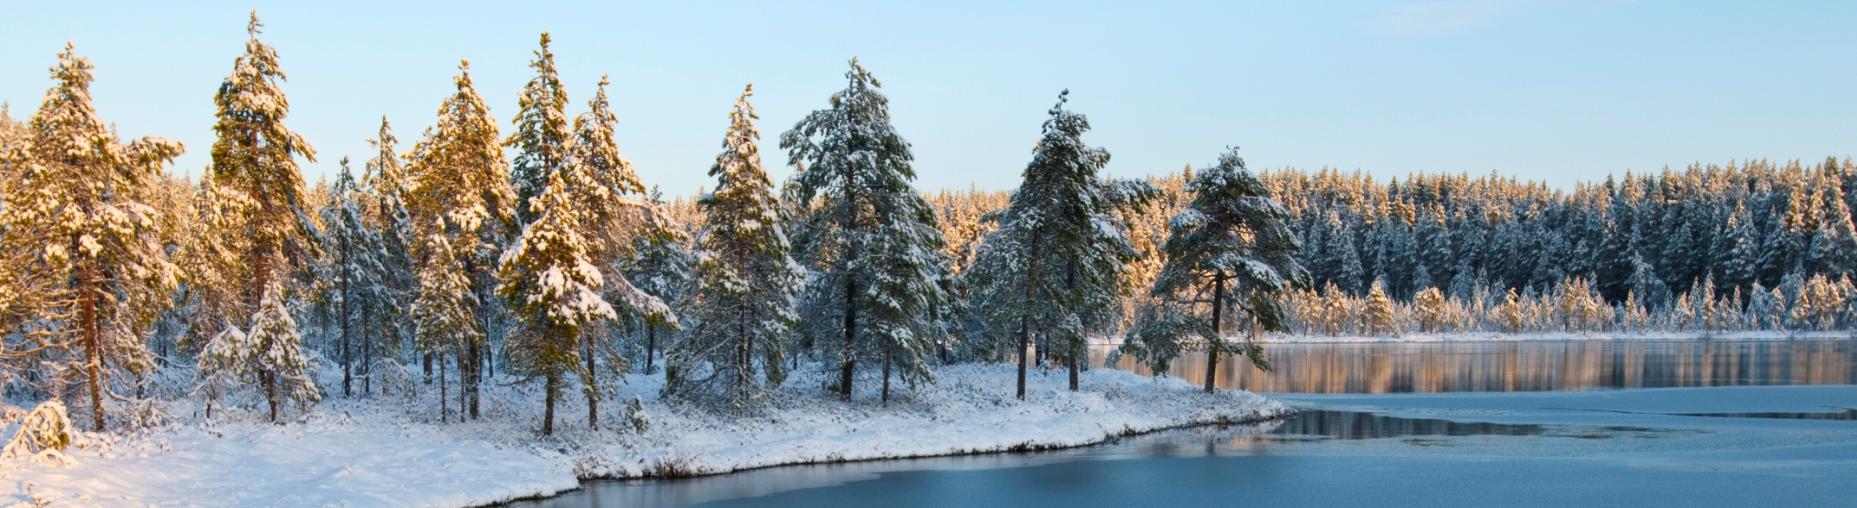 Seitsemisen kansallispuisto Ajo-ohjeet Seitsemisen kansallispuisto sijaitsee Pohjois- Pirkanmaalla, noin 80 km Tampereen luoteispuolella.